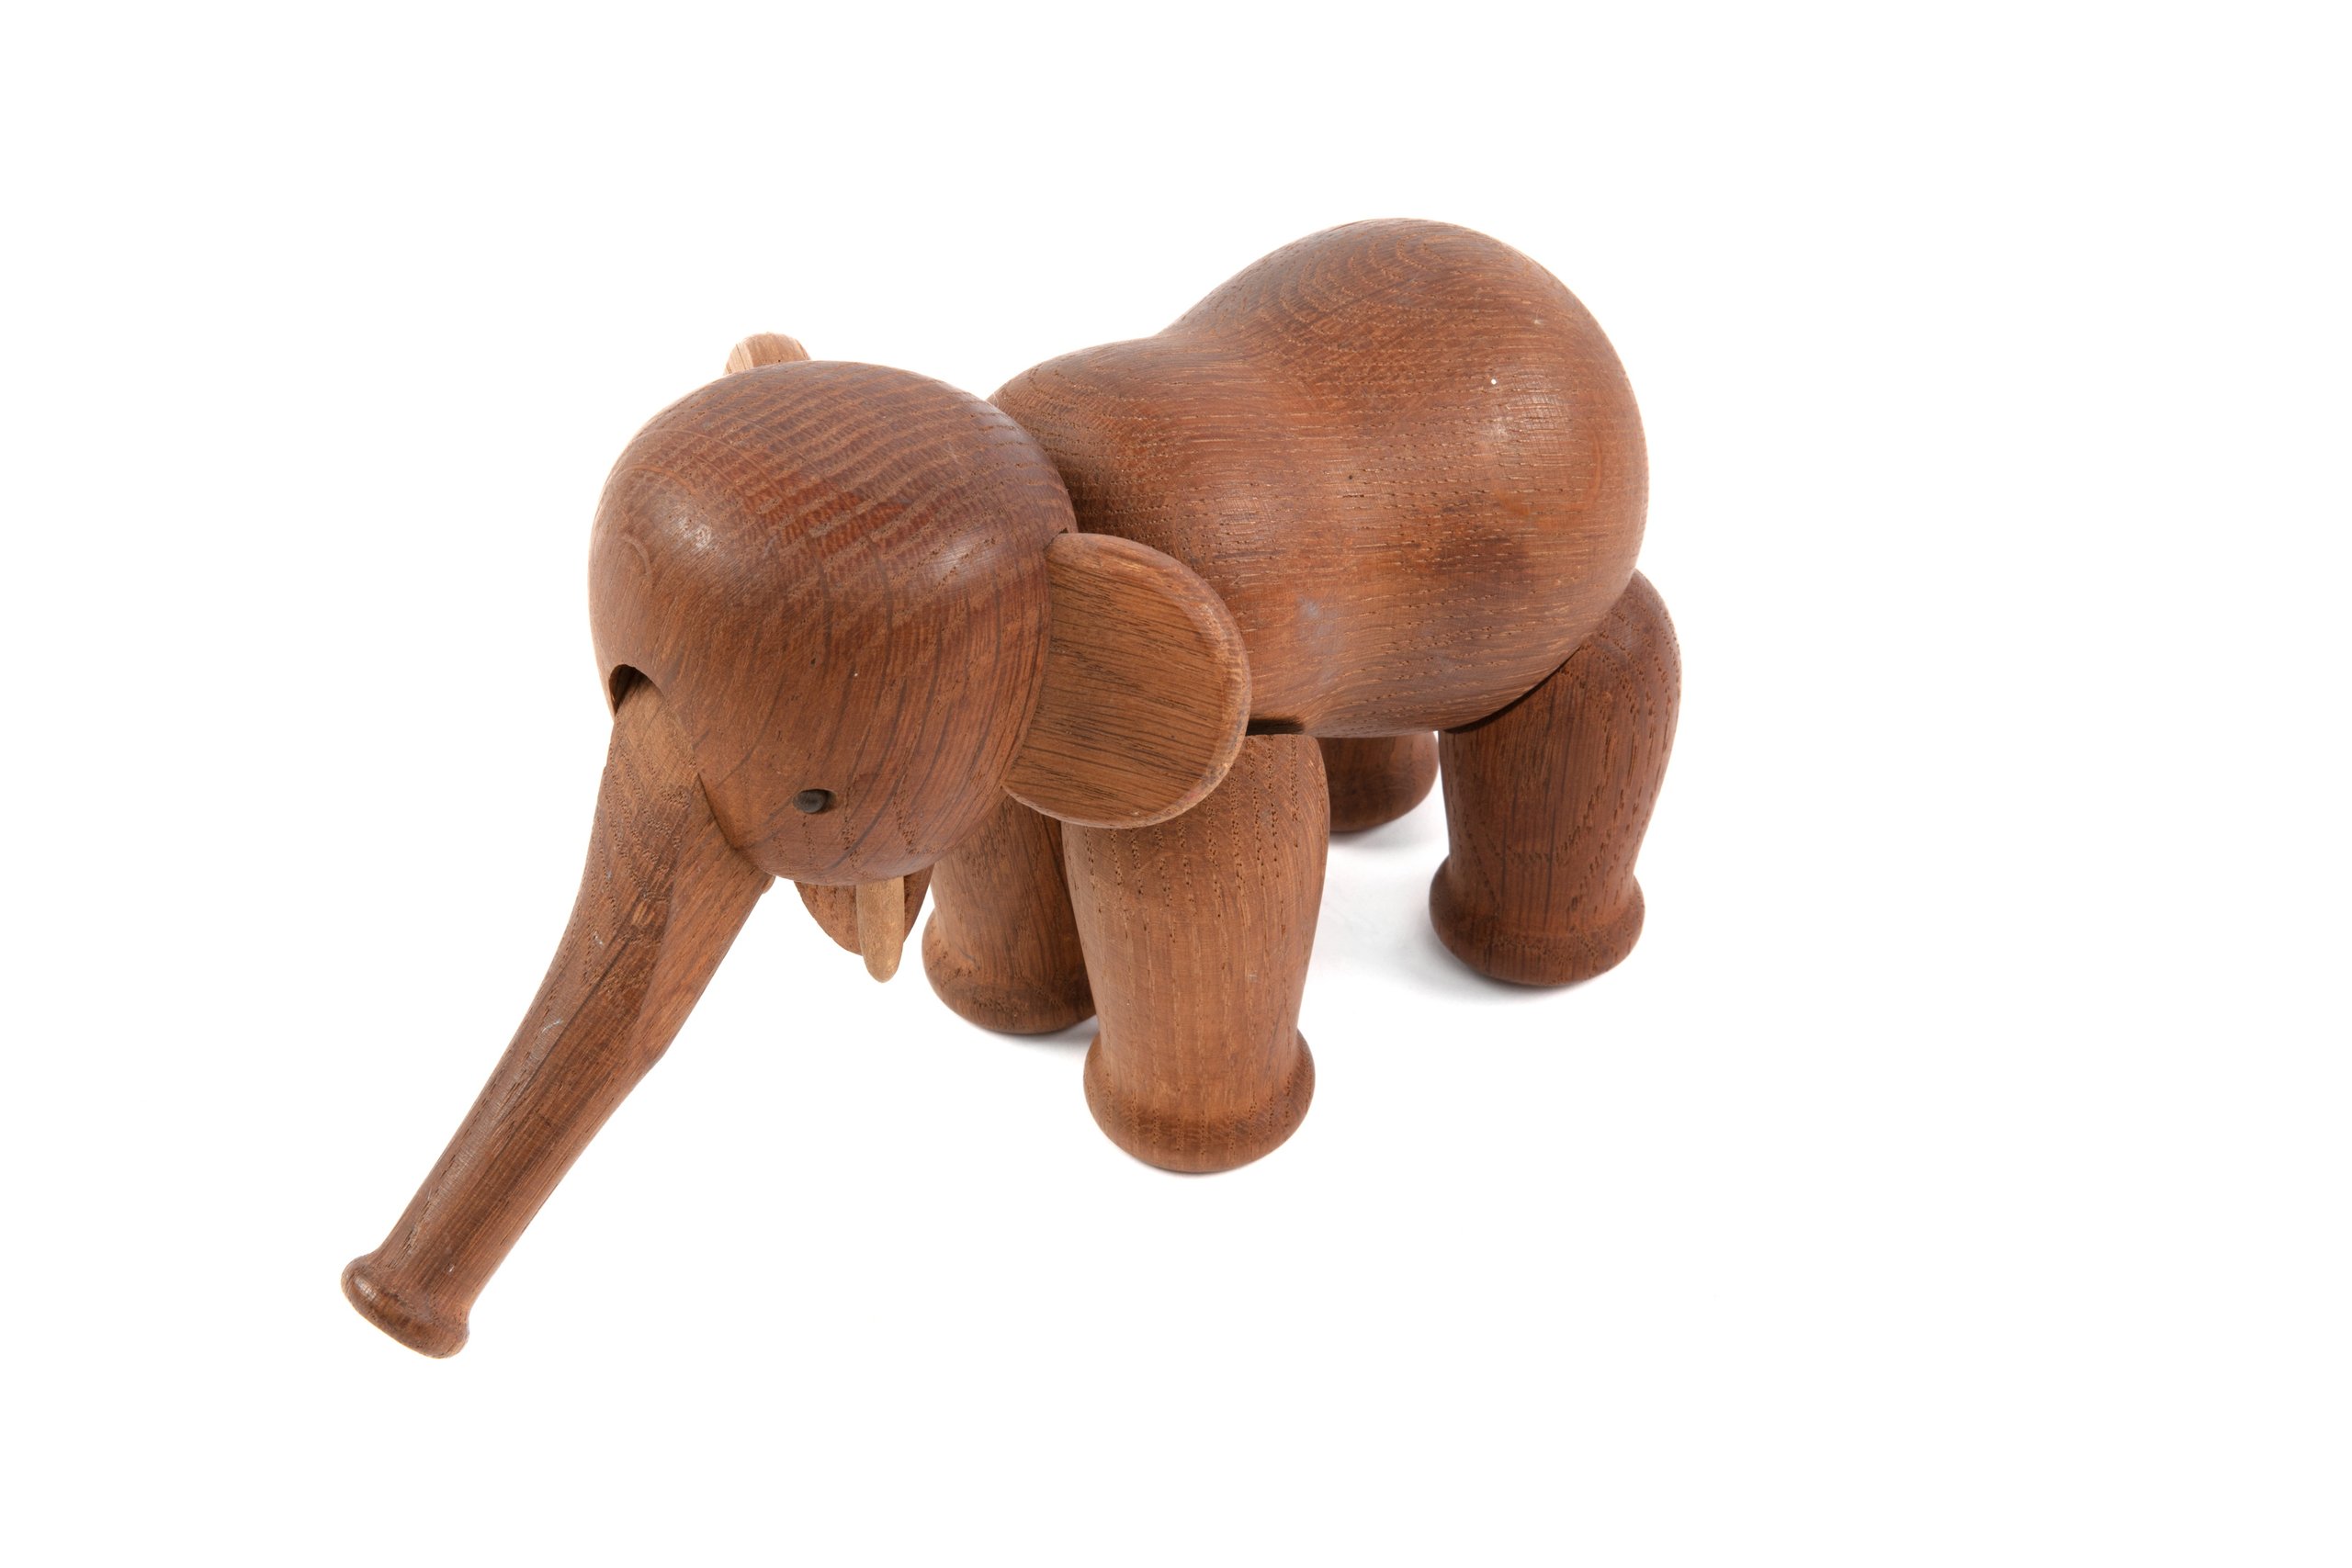 Toy elephant designed by Kay Bojesen